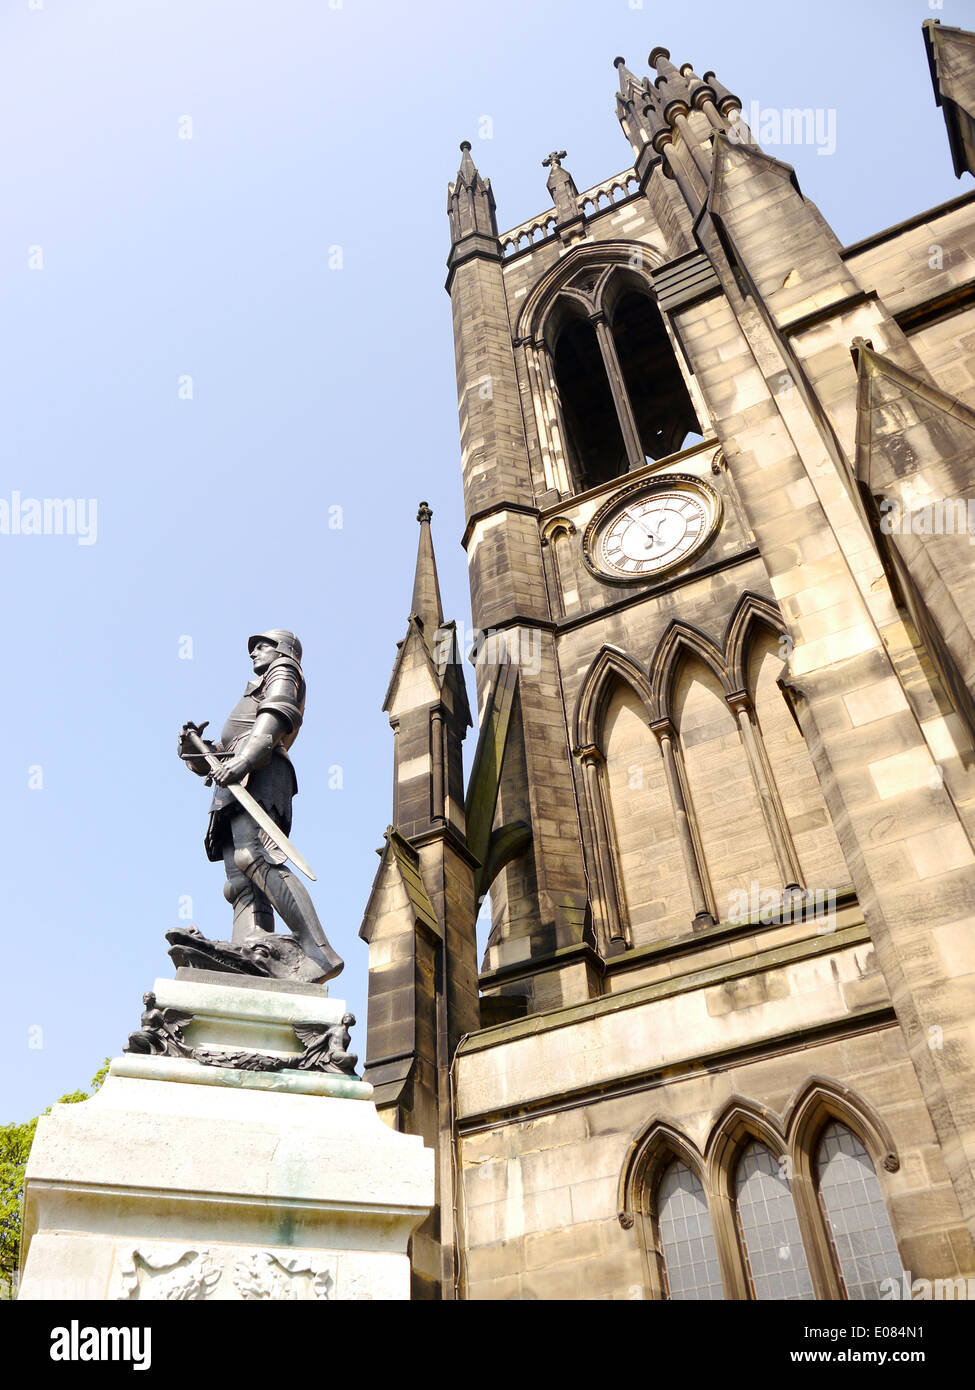 Détail architectural de Saint Thomas le martyr de saint George et de l'Église statue (premier plan) à Newcastle Upon Tyne, England, UK Banque D'Images